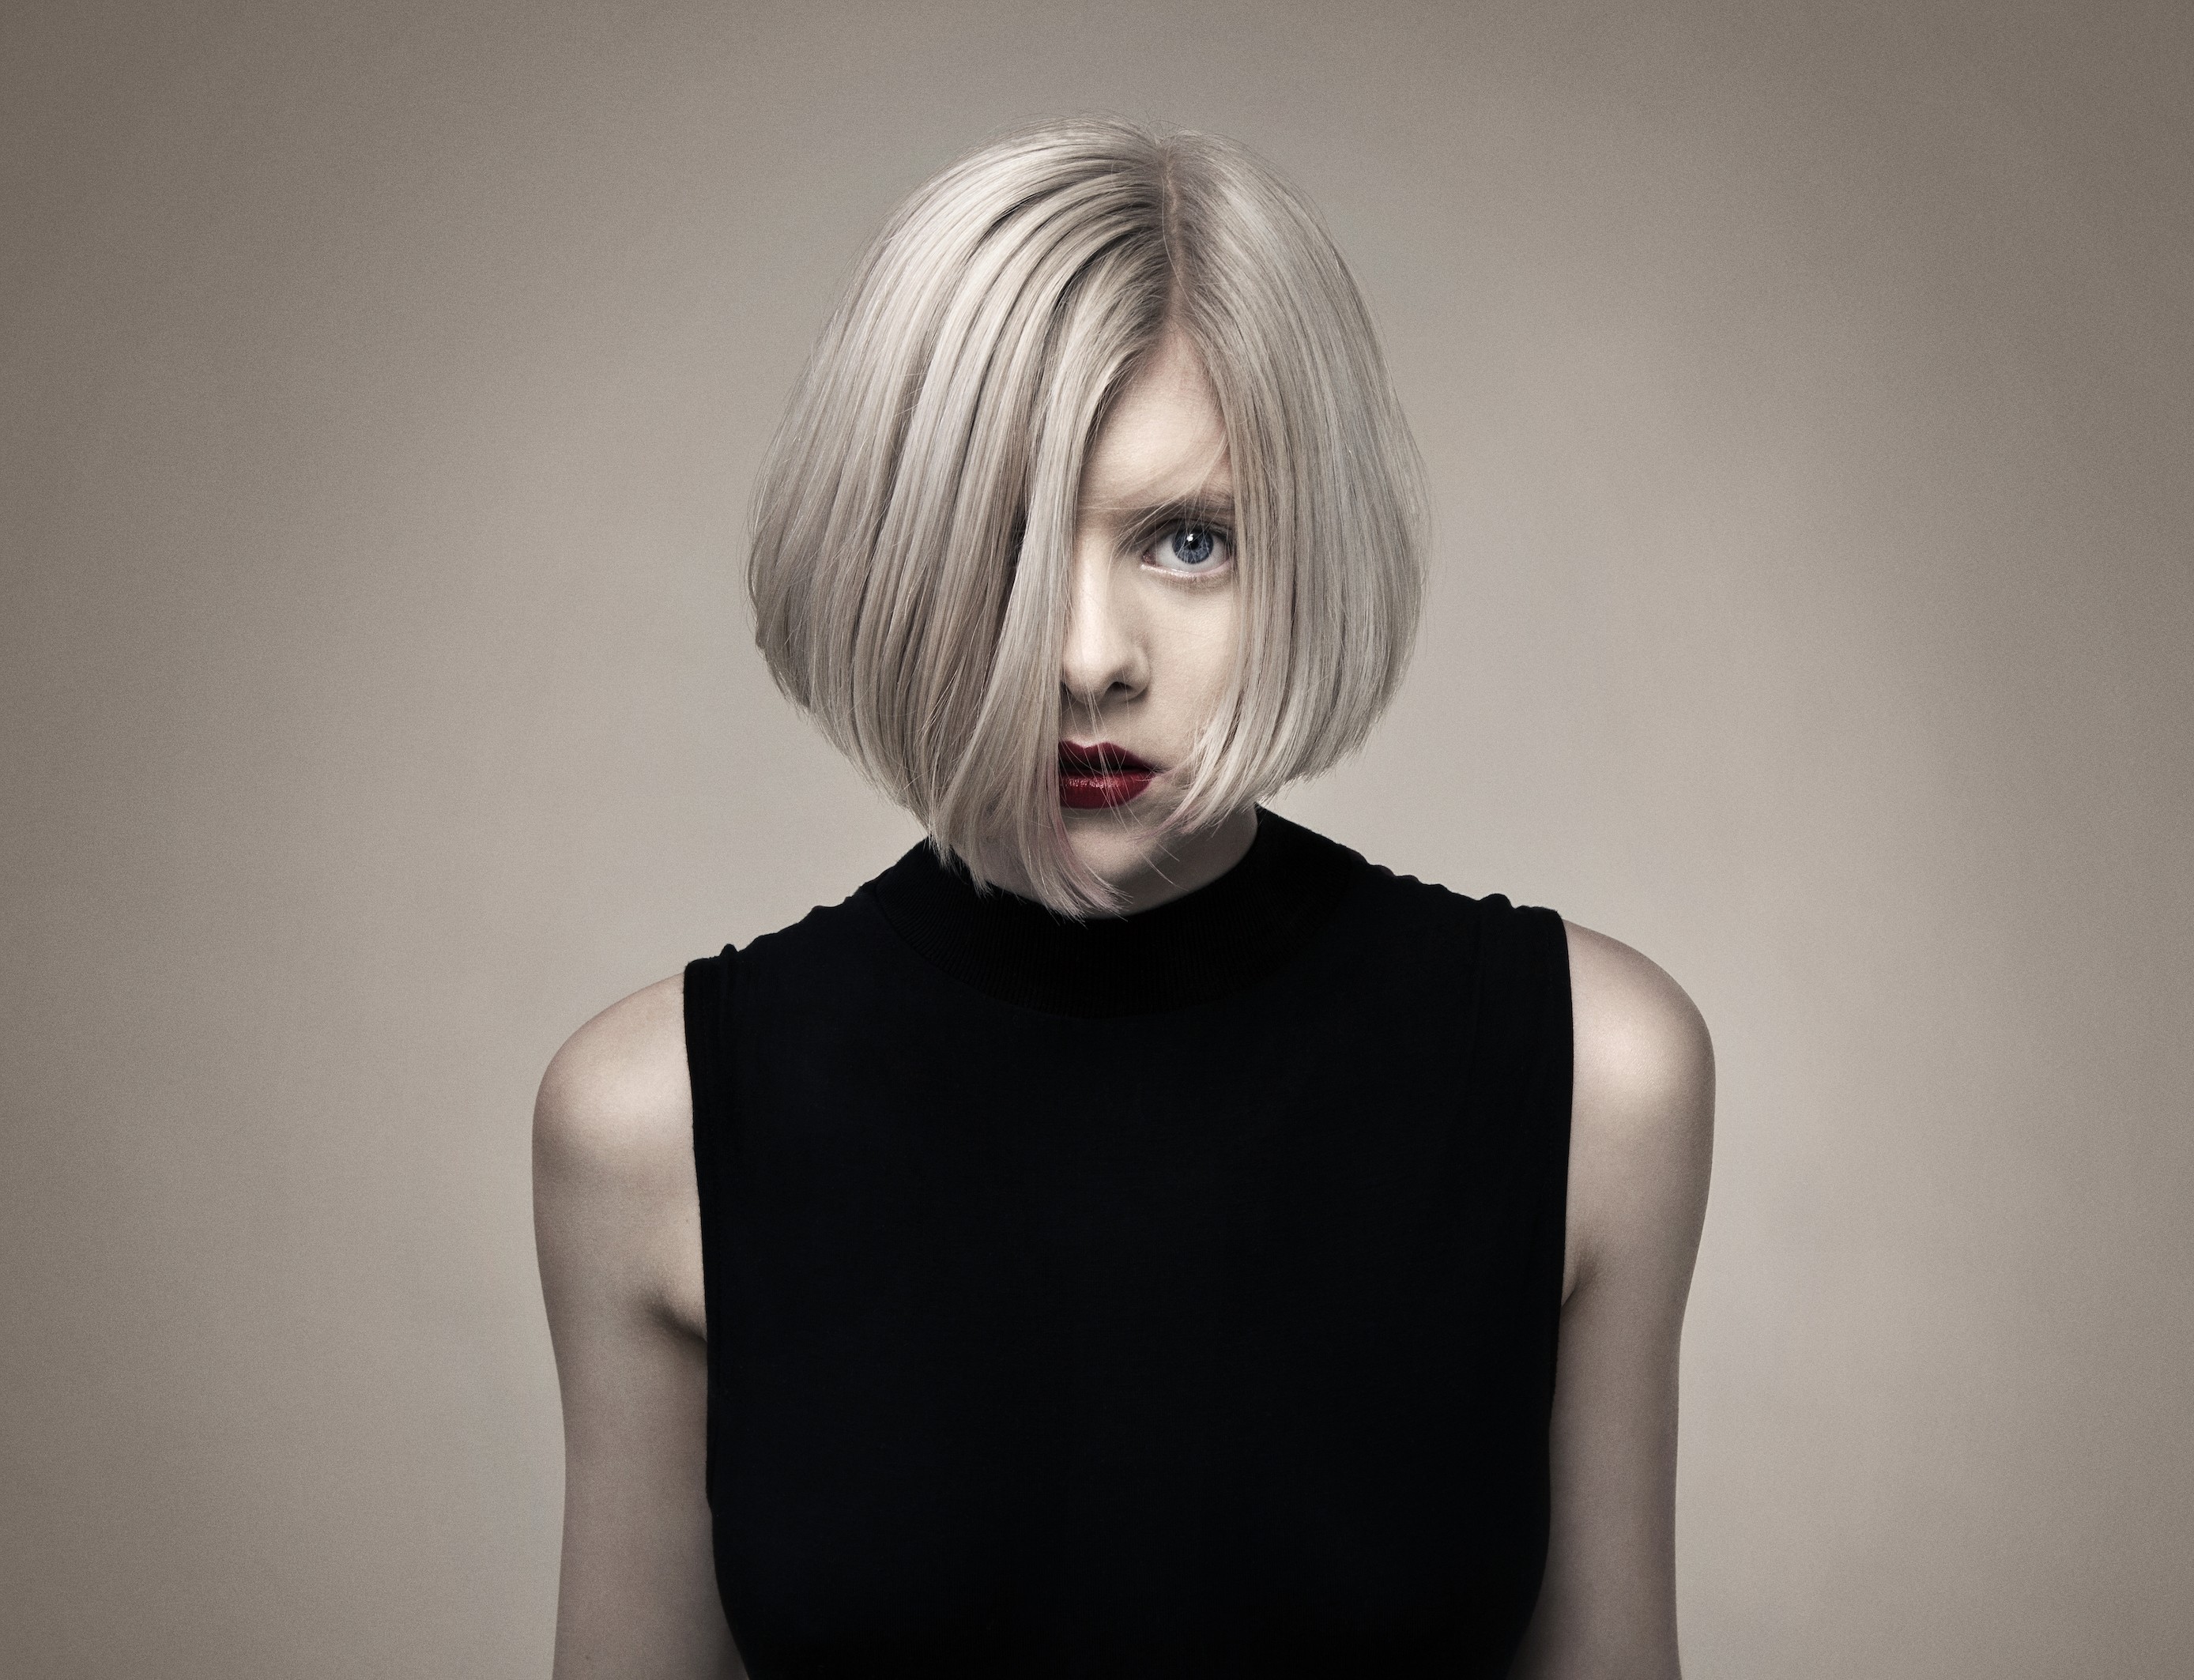 Women Aurora Aksnes Musician Singer White Hair Short Hair Looking At Viewer Blue Eyes Hair In Face N 2776x2126